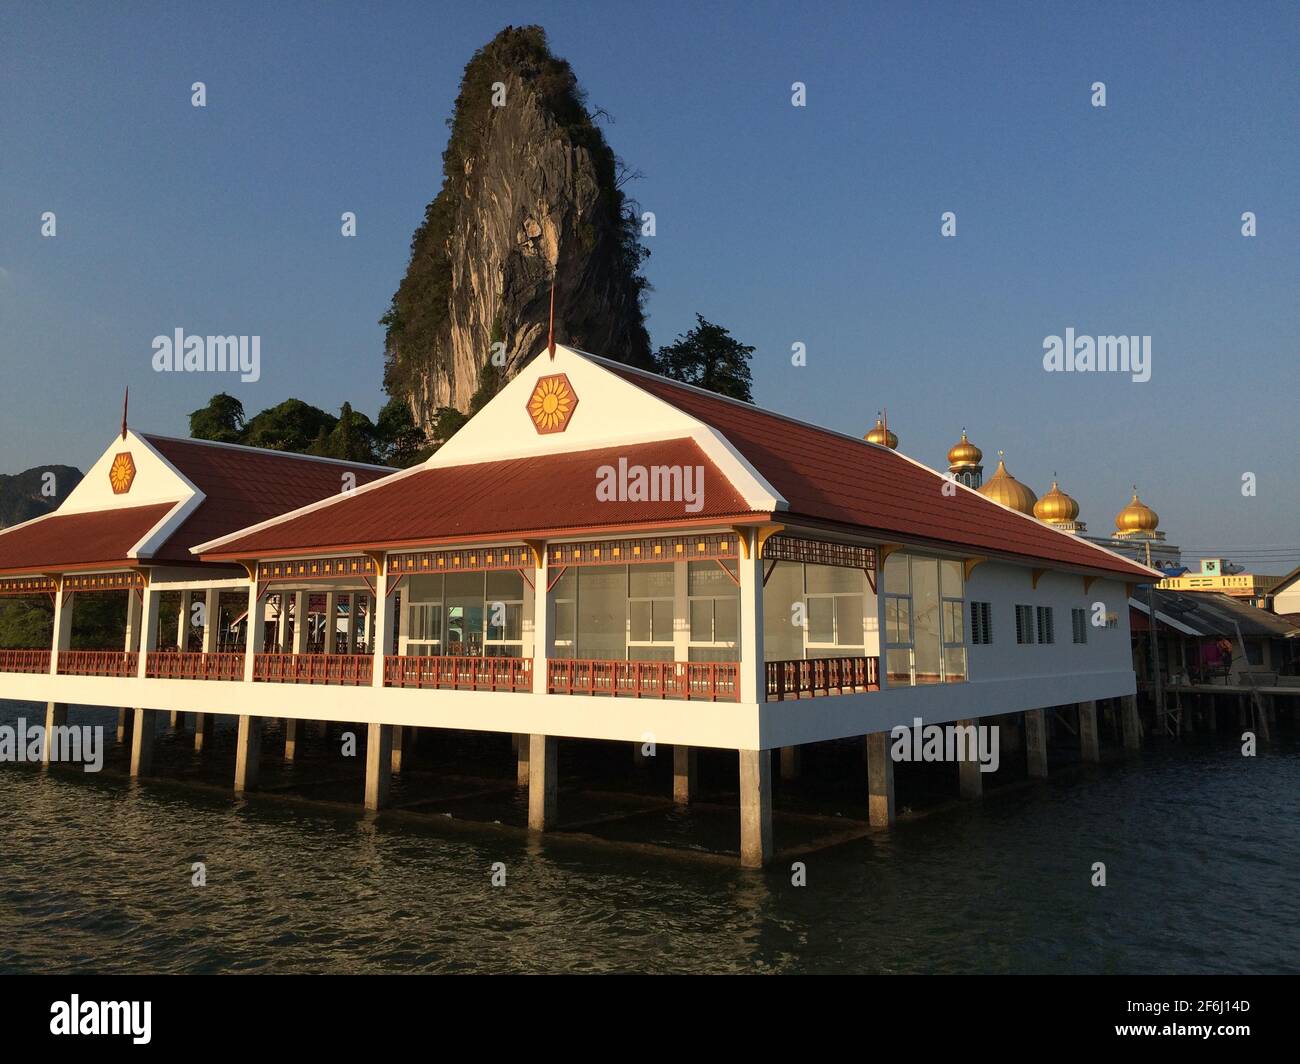 Koh Panyi, Phang Nga, Tailandia - Marzo 15 2016: Barcos turísticos de cola larga estacionando en la orilla del pueblo flotante de Koh Panyi Foto de stock